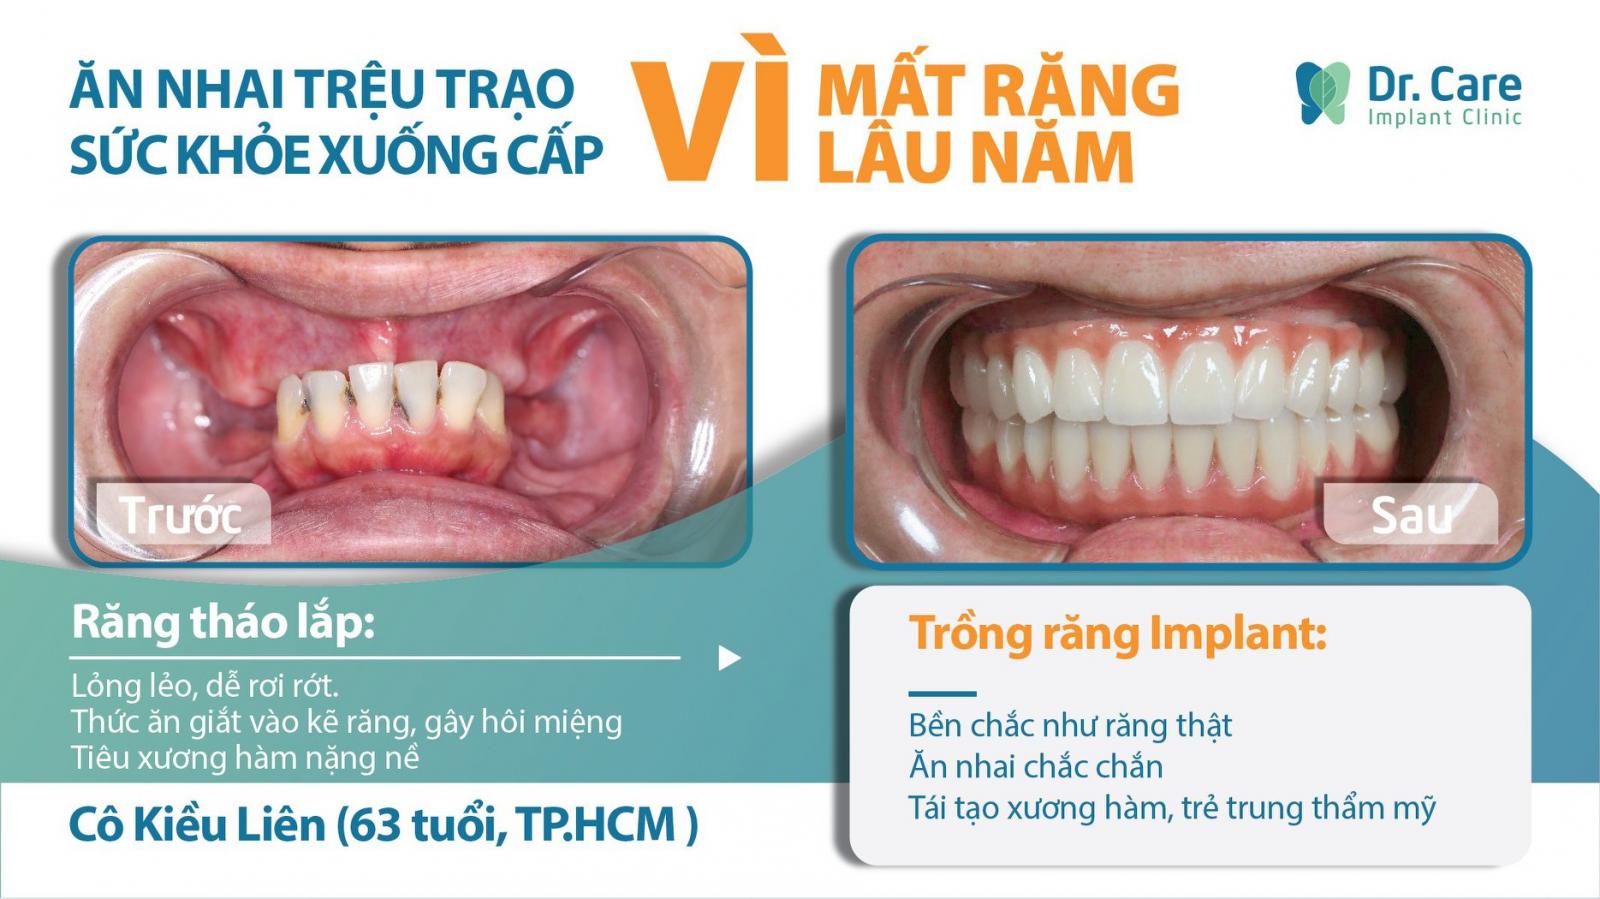 Hậu quả của mất răng lâu ngày 